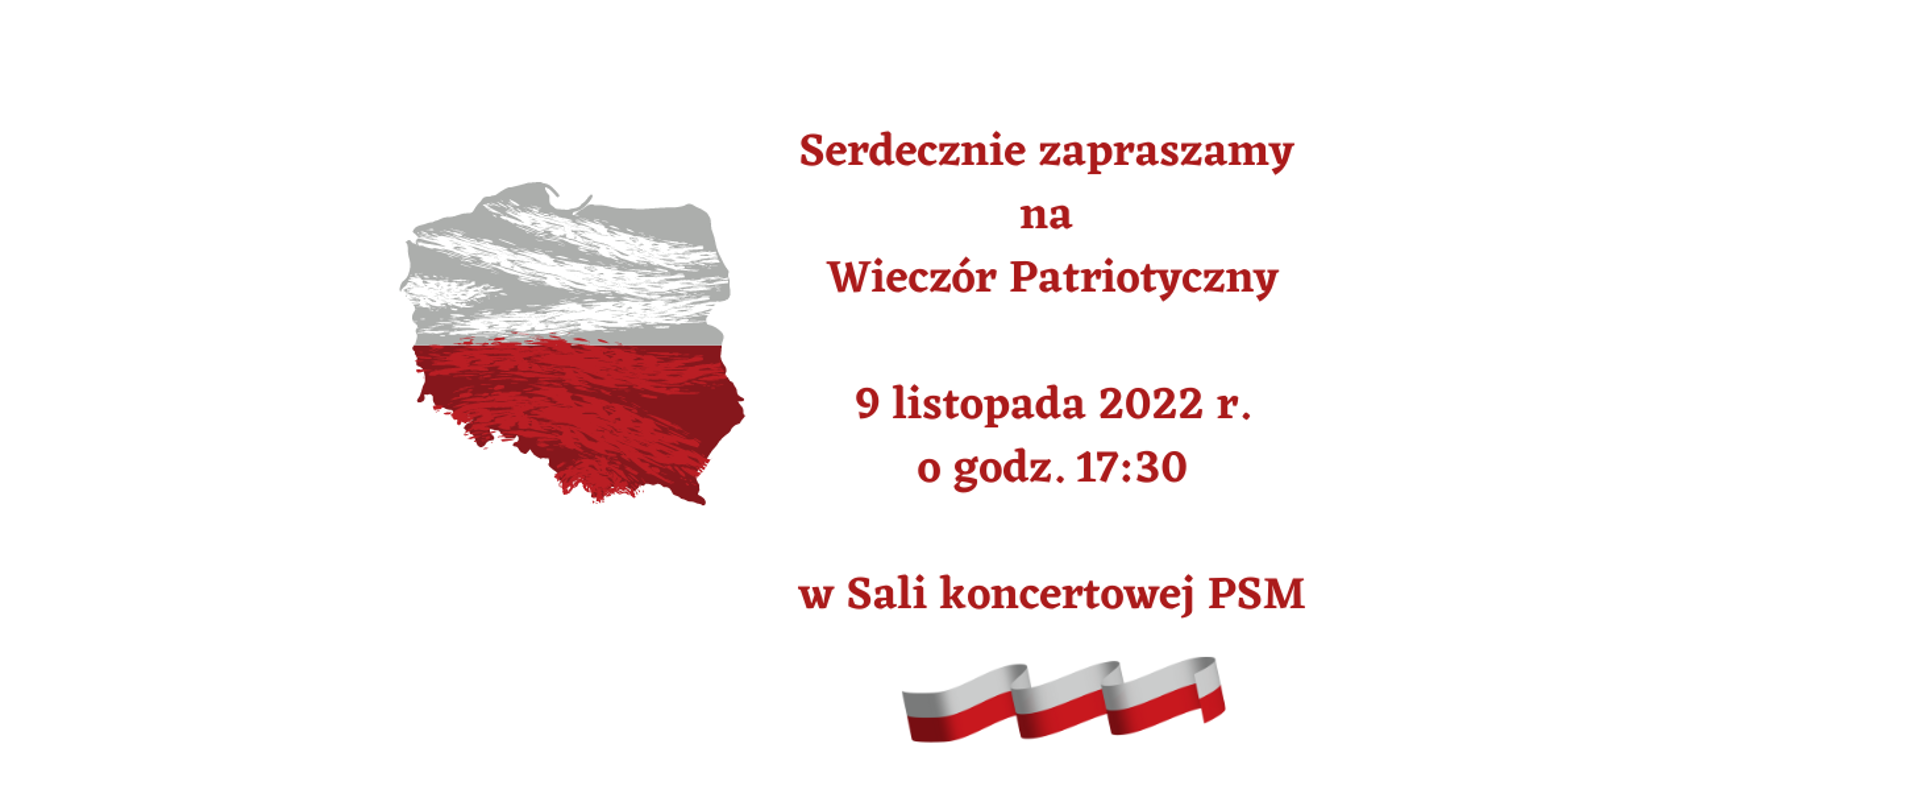 Ogłoszenie przedstawia informacje dot. Wieczoru Patriotycznego, który odbędzie się 9 listopada 2022 r. o godz. 17:30. Z lewej strony widnieje kształt Polski w barwach biało-czerwonych, pod tekstem widoczna jest wstążka w barwach biało-czerwonych. 